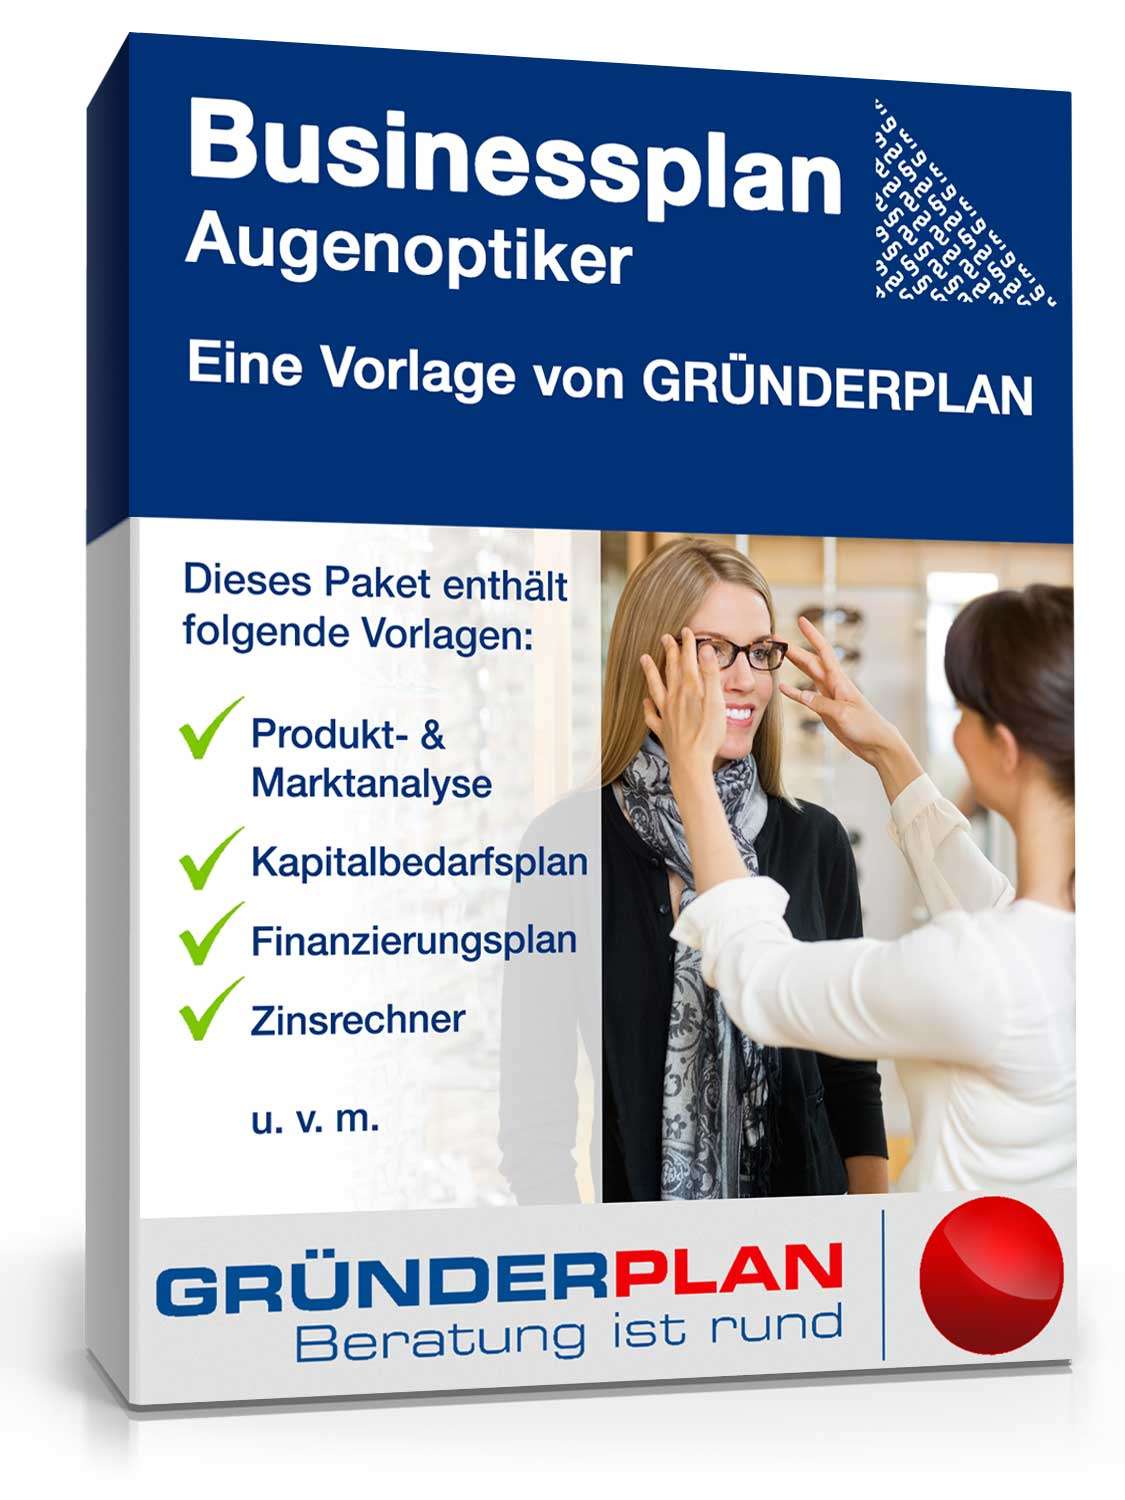 Hauptbild des Produkts: Businessplan Augenoptiker von Gründerplan